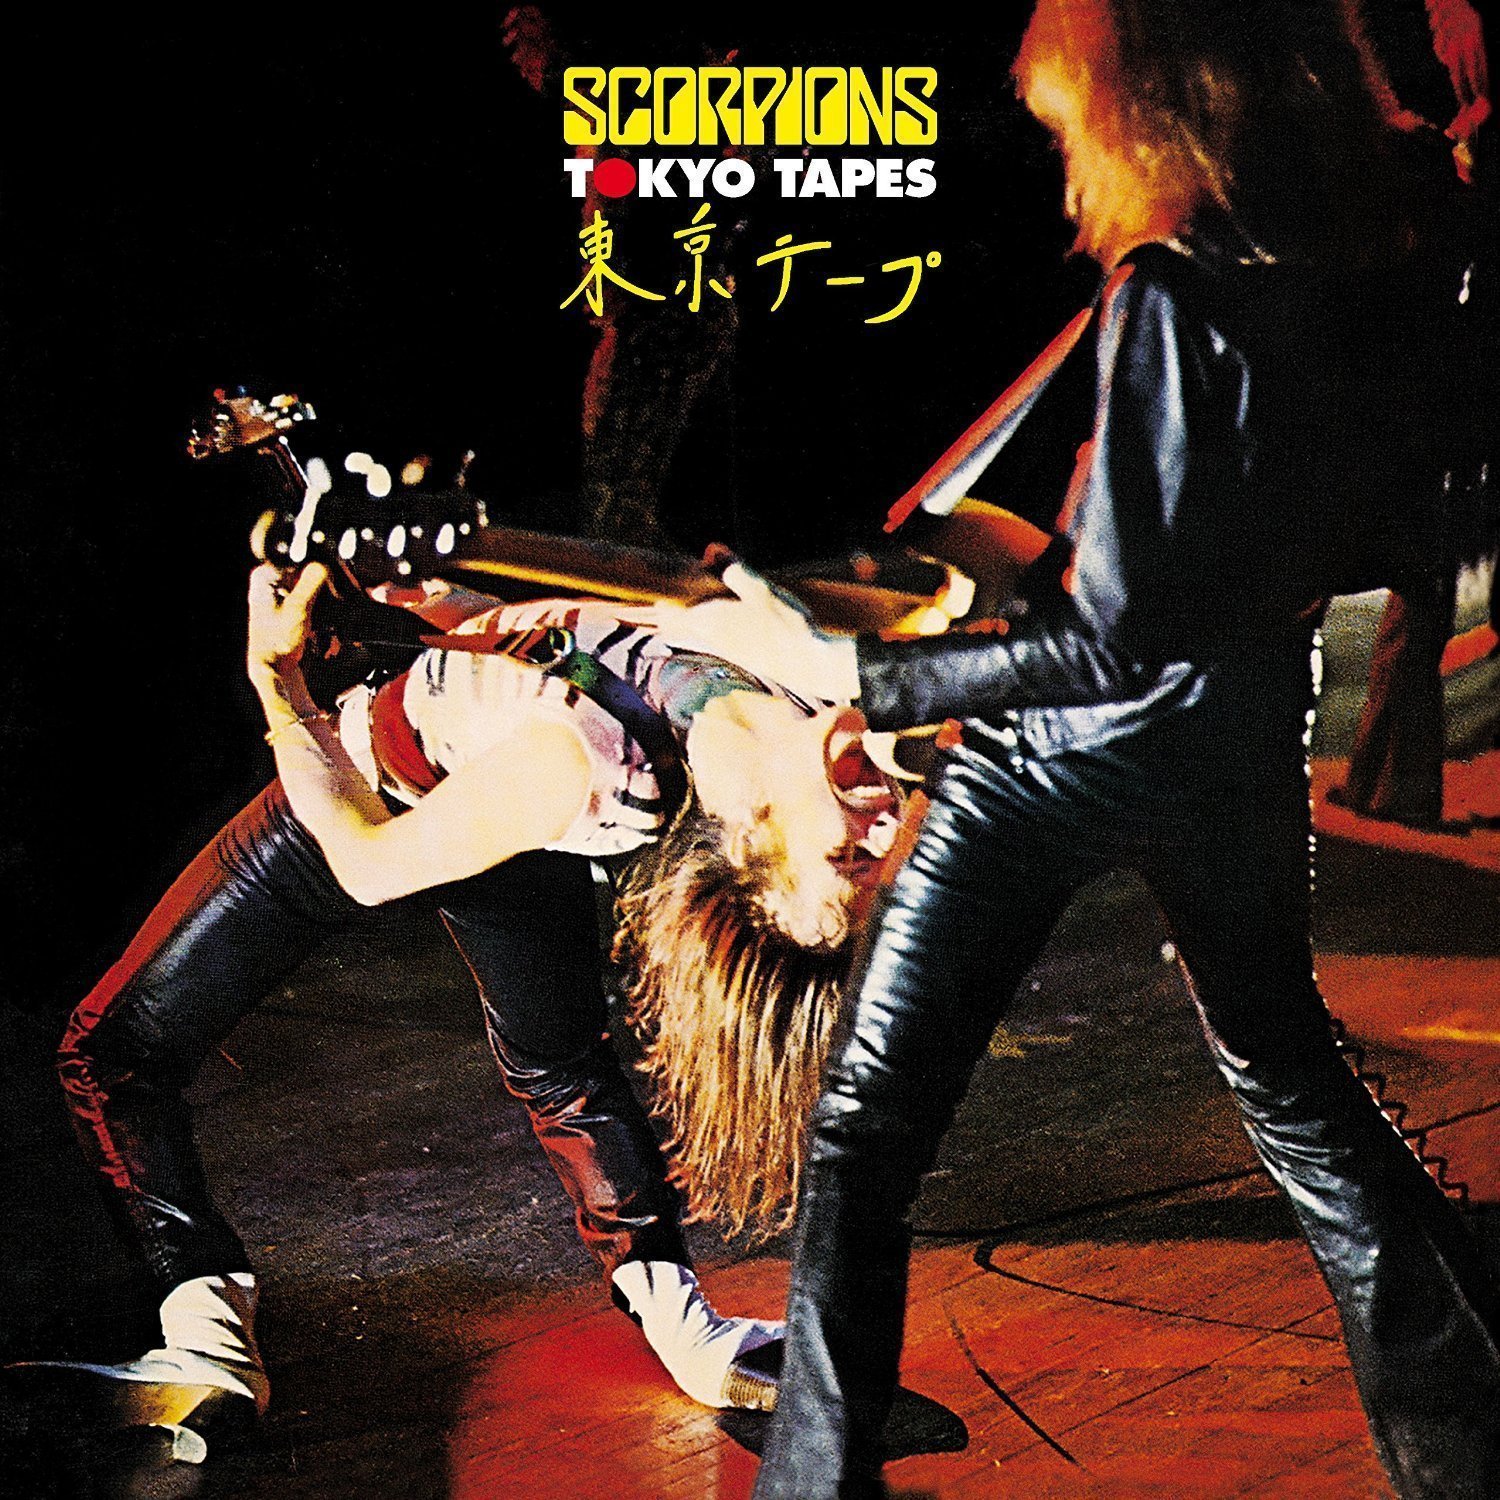 LP deska Scorpions - Tokyo Tapes - Live (2 CD + 2 LP)